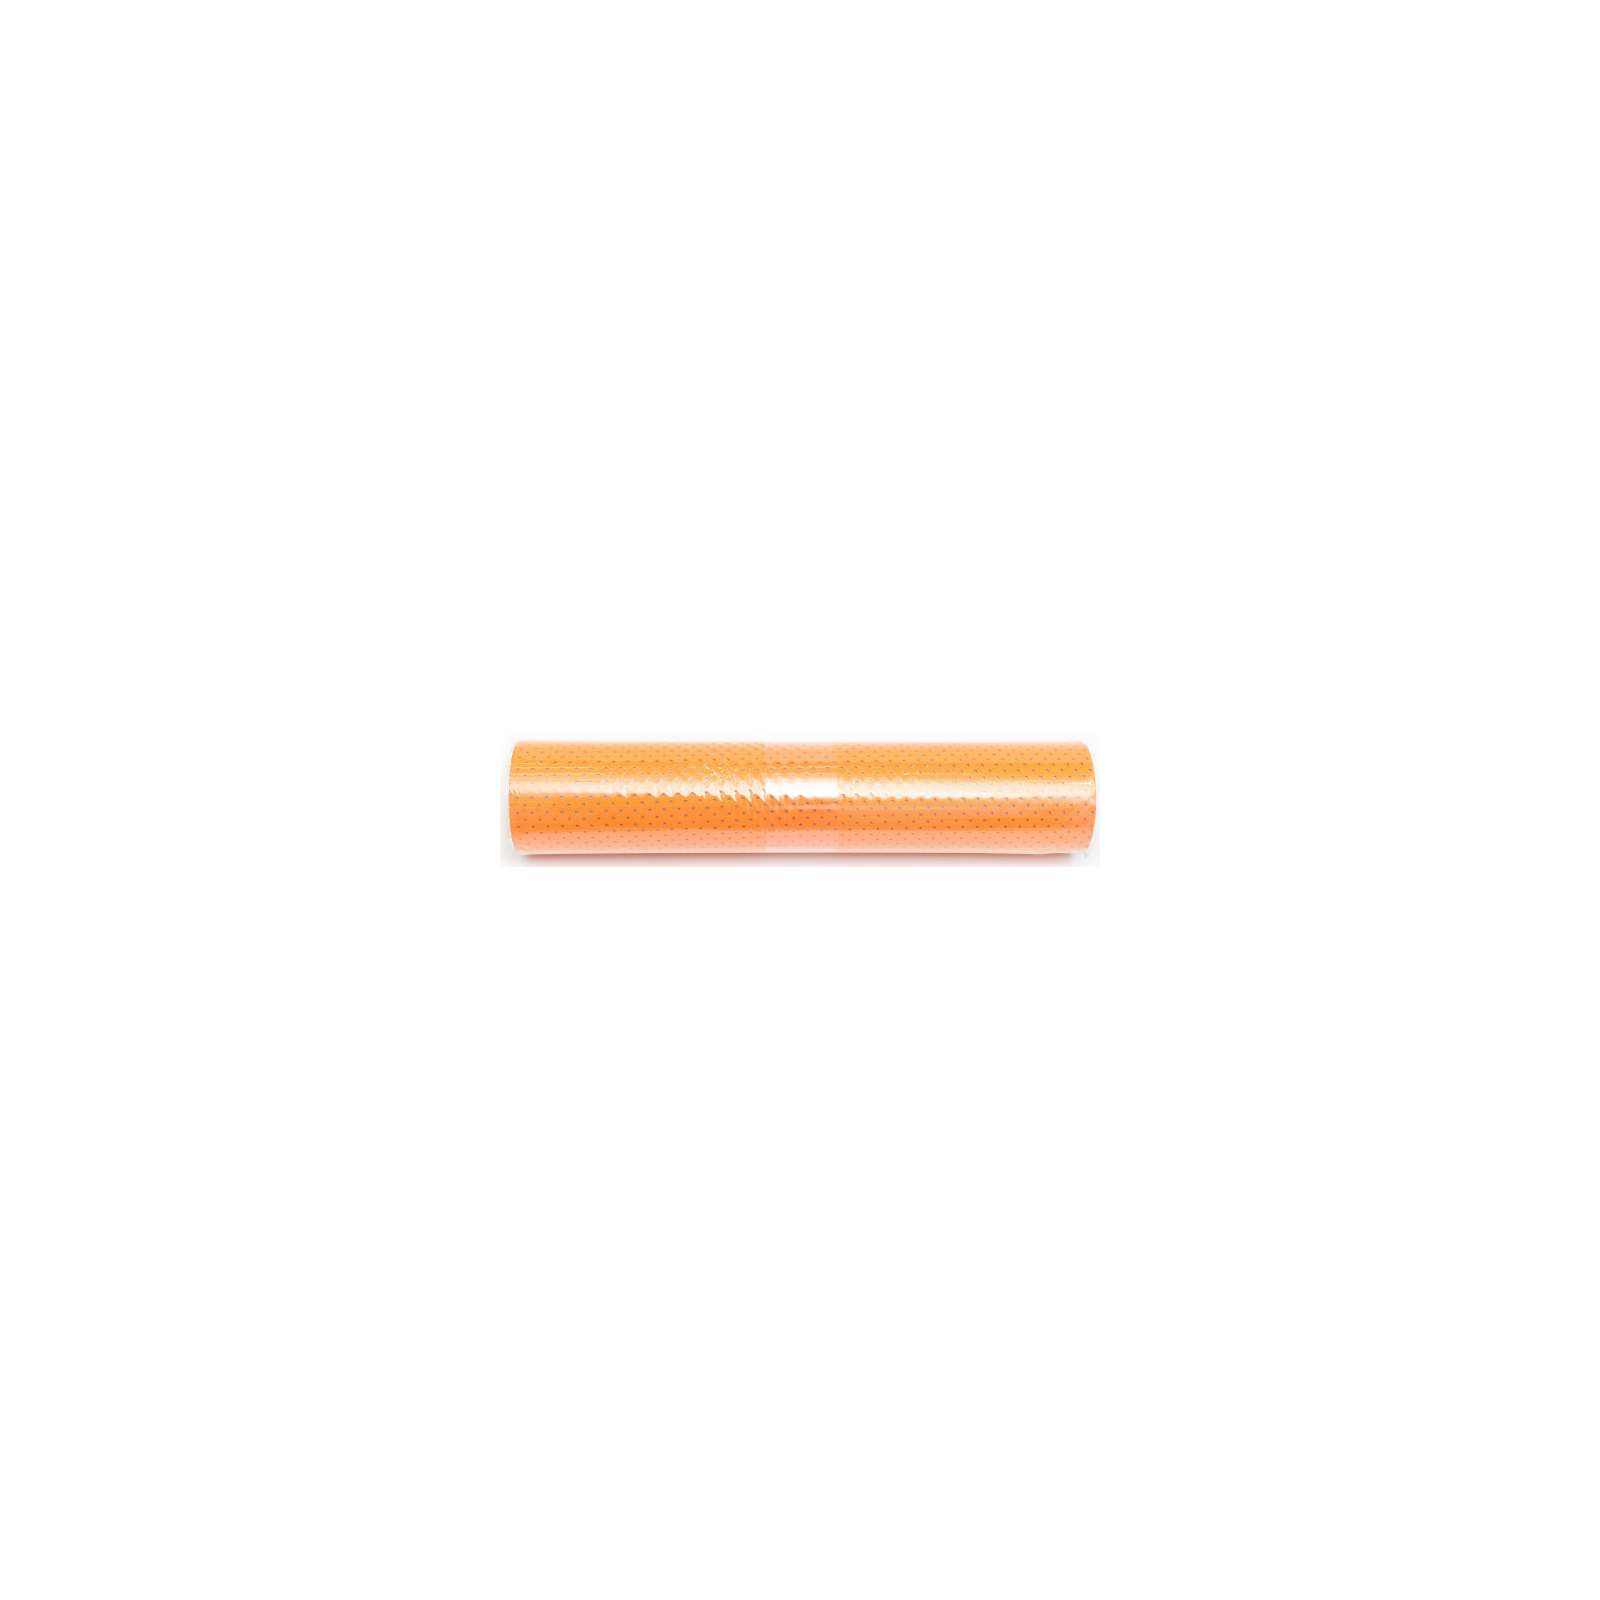 Килимок для фітнесу Ecofit MD9010 1730*610*6 мм Orange (К00016672)